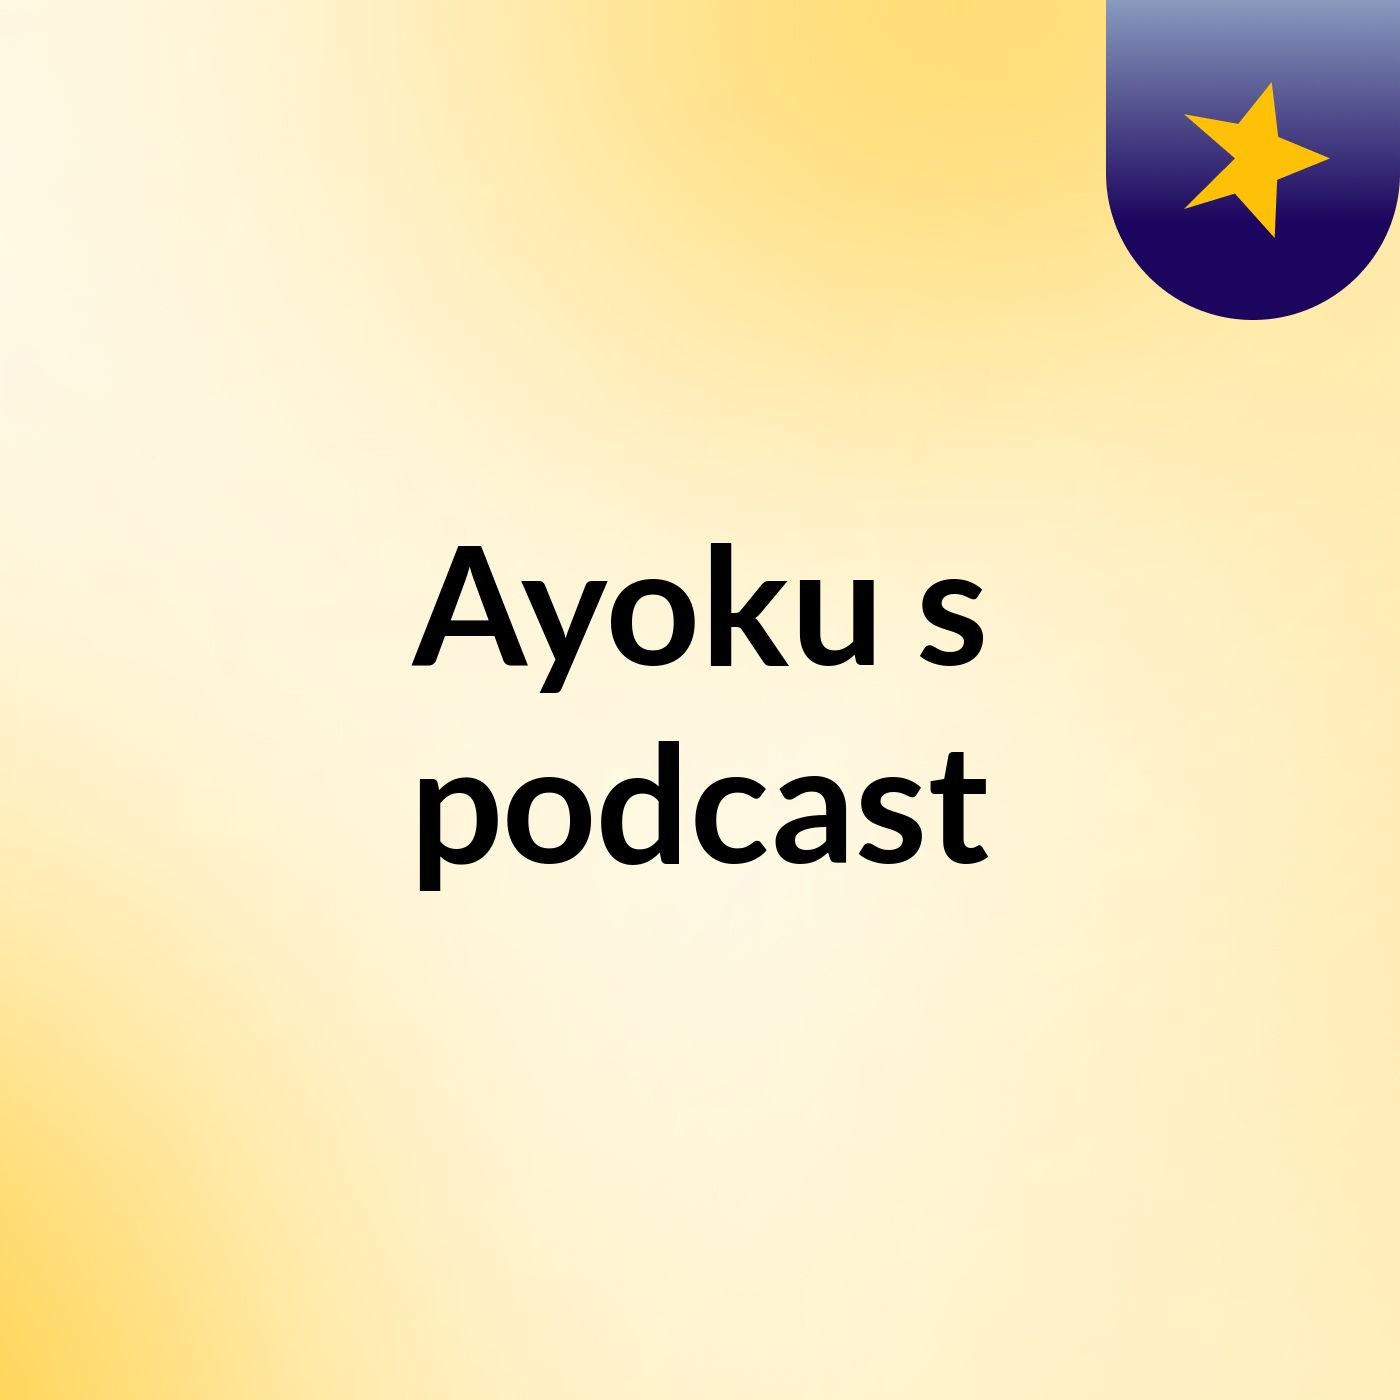 Ayoku's podcast